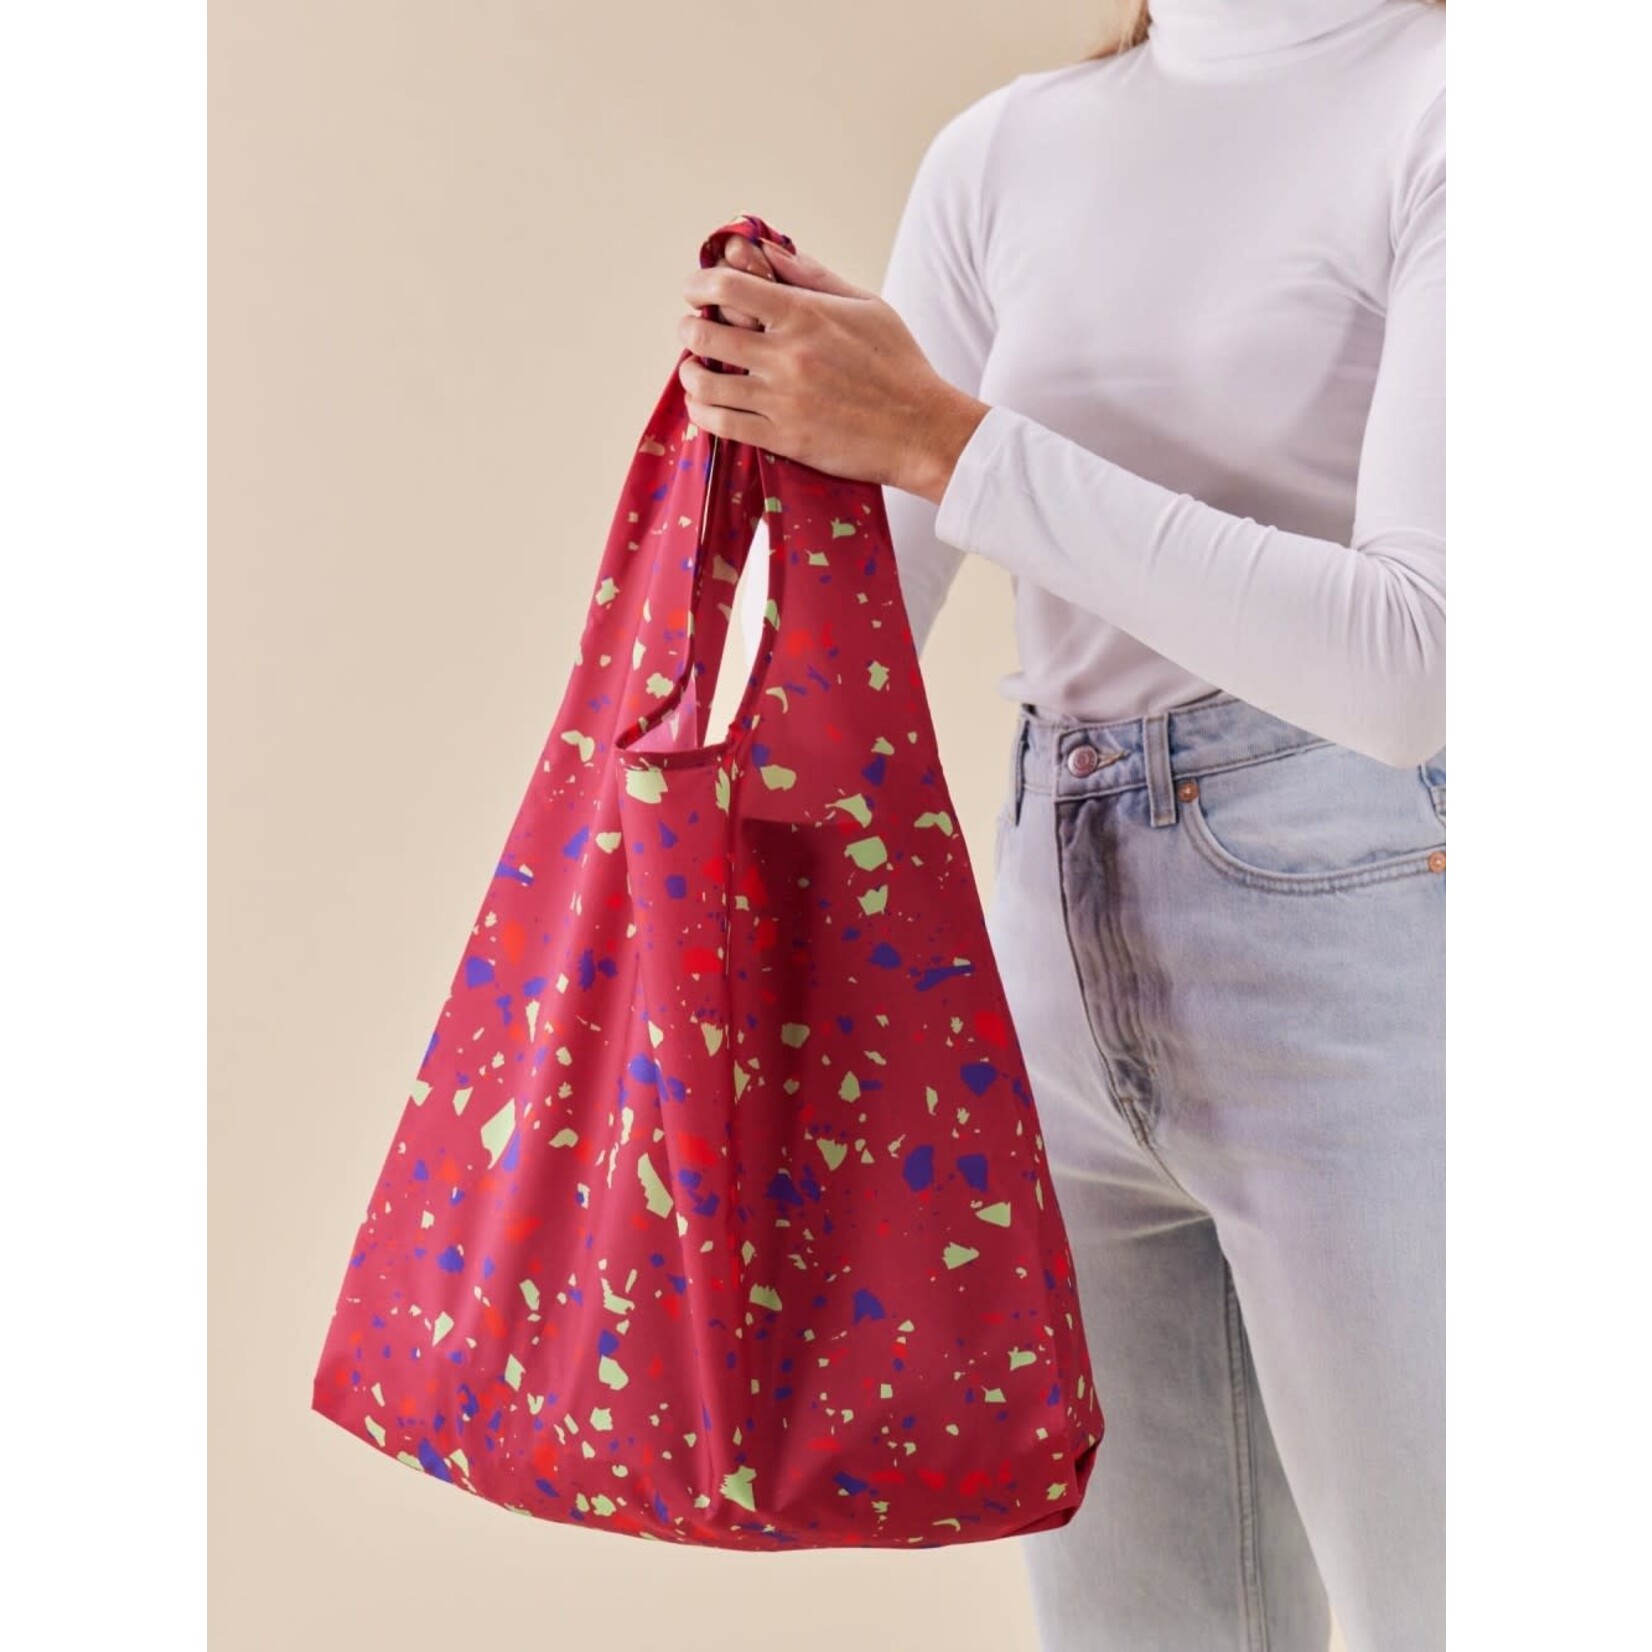 Terraz-Wow Reusable Eco Friendly Bag